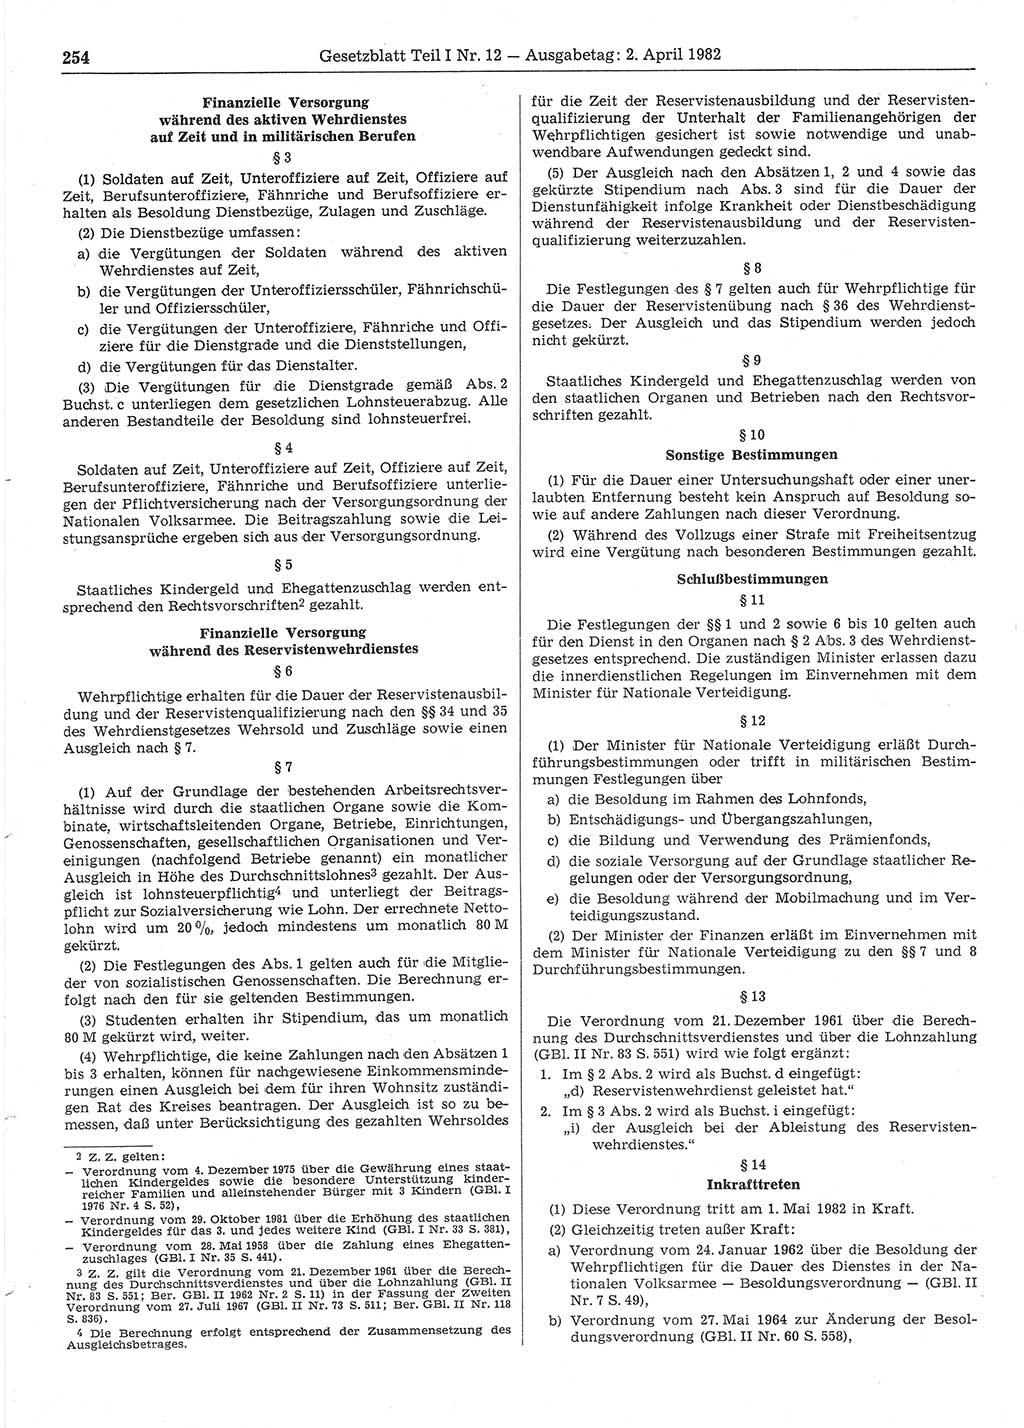 Gesetzblatt (GBl.) der Deutschen Demokratischen Republik (DDR) Teil Ⅰ 1982, Seite 254 (GBl. DDR Ⅰ 1982, S. 254)